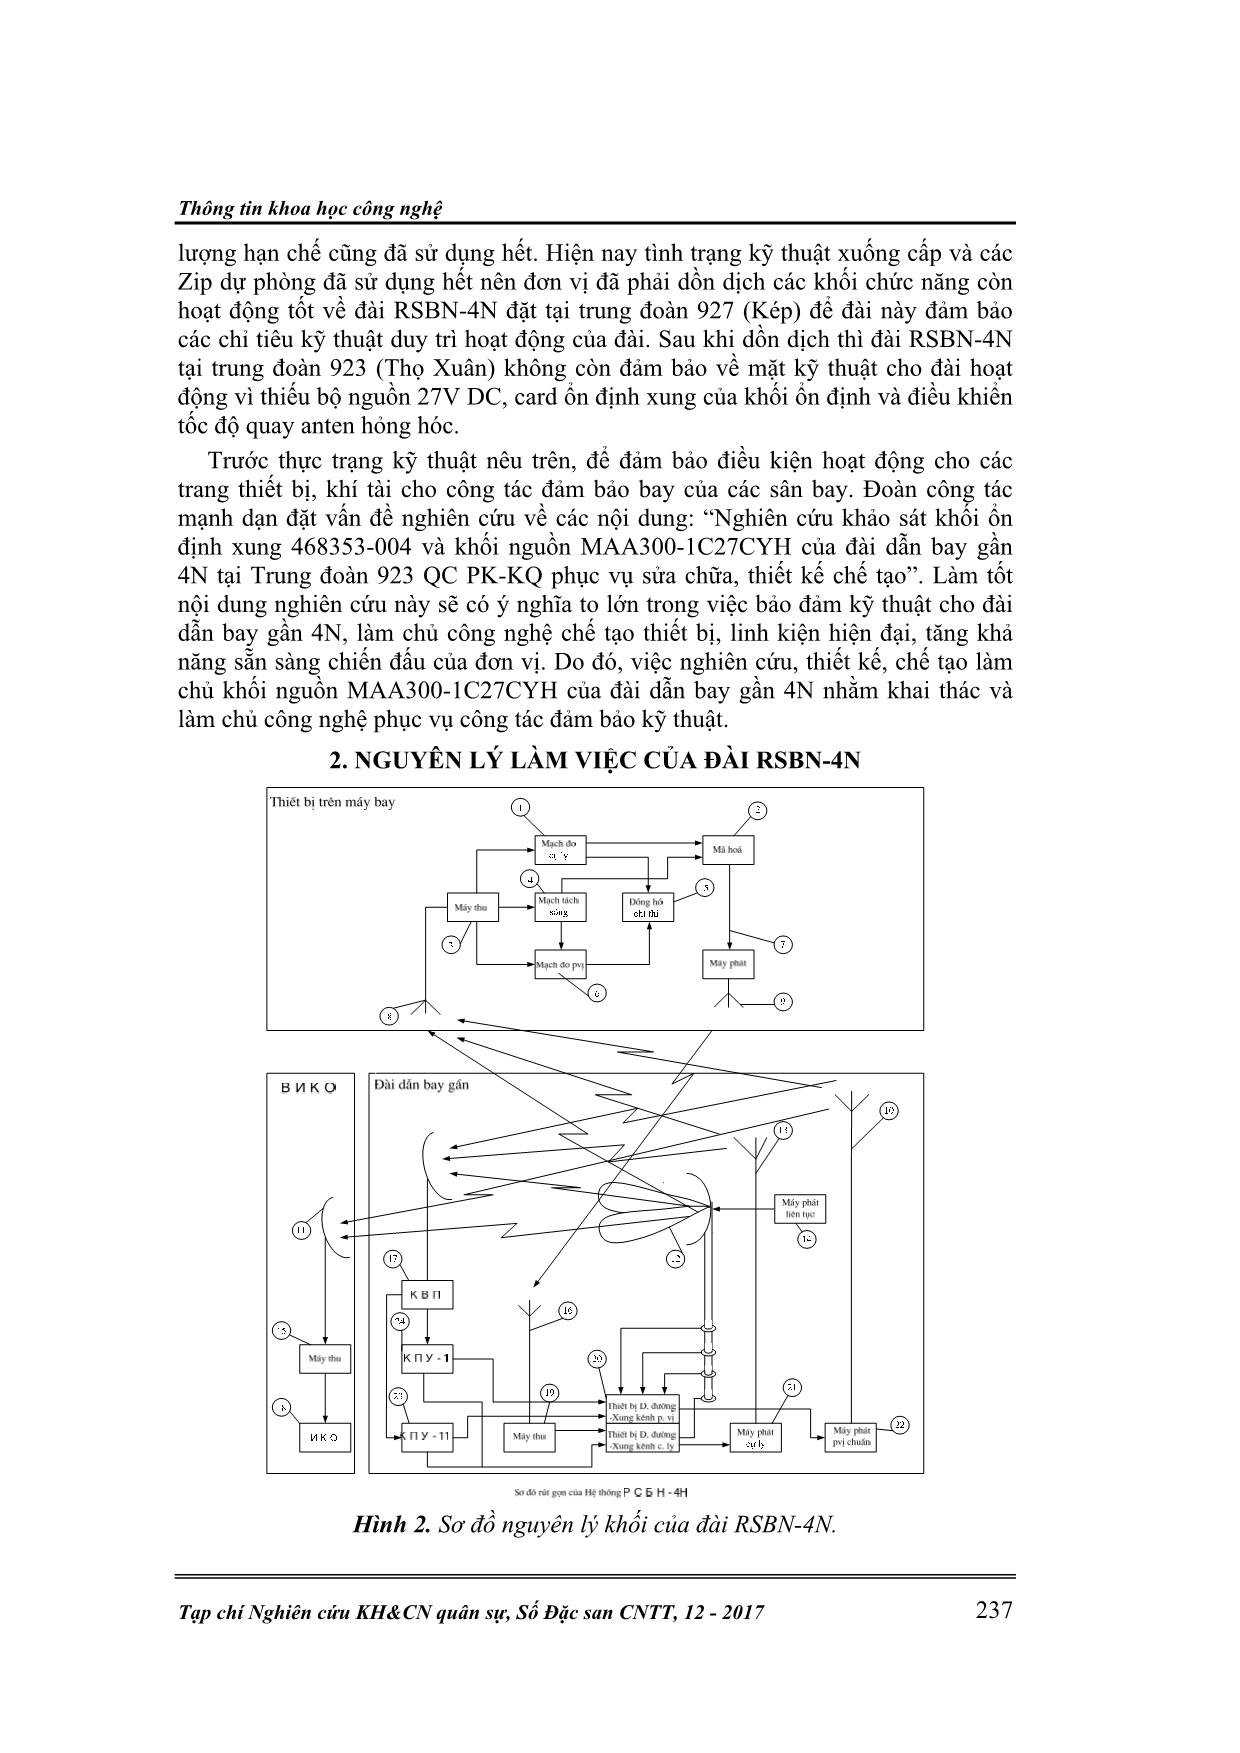 Khối nguồn 27V công suất lớn MAA300-1C27CYH trong khối xử lý trung tâm của đài dẫn bay gần 4N trang 2